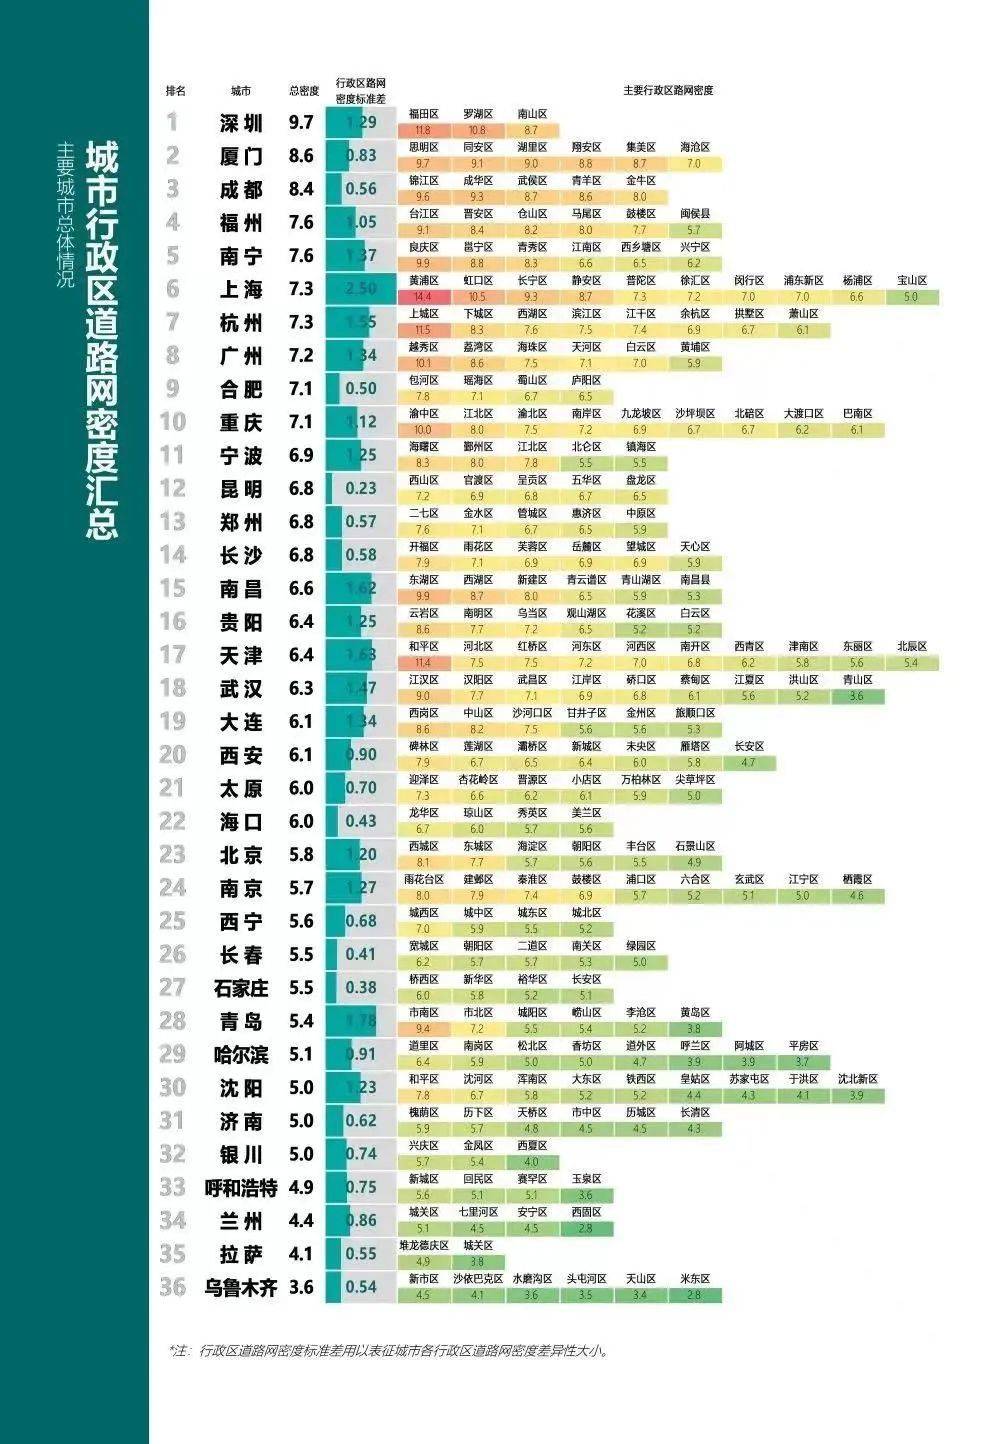 图表来源：《中国主要城市道路网密度与运行状态监测报告》<br>